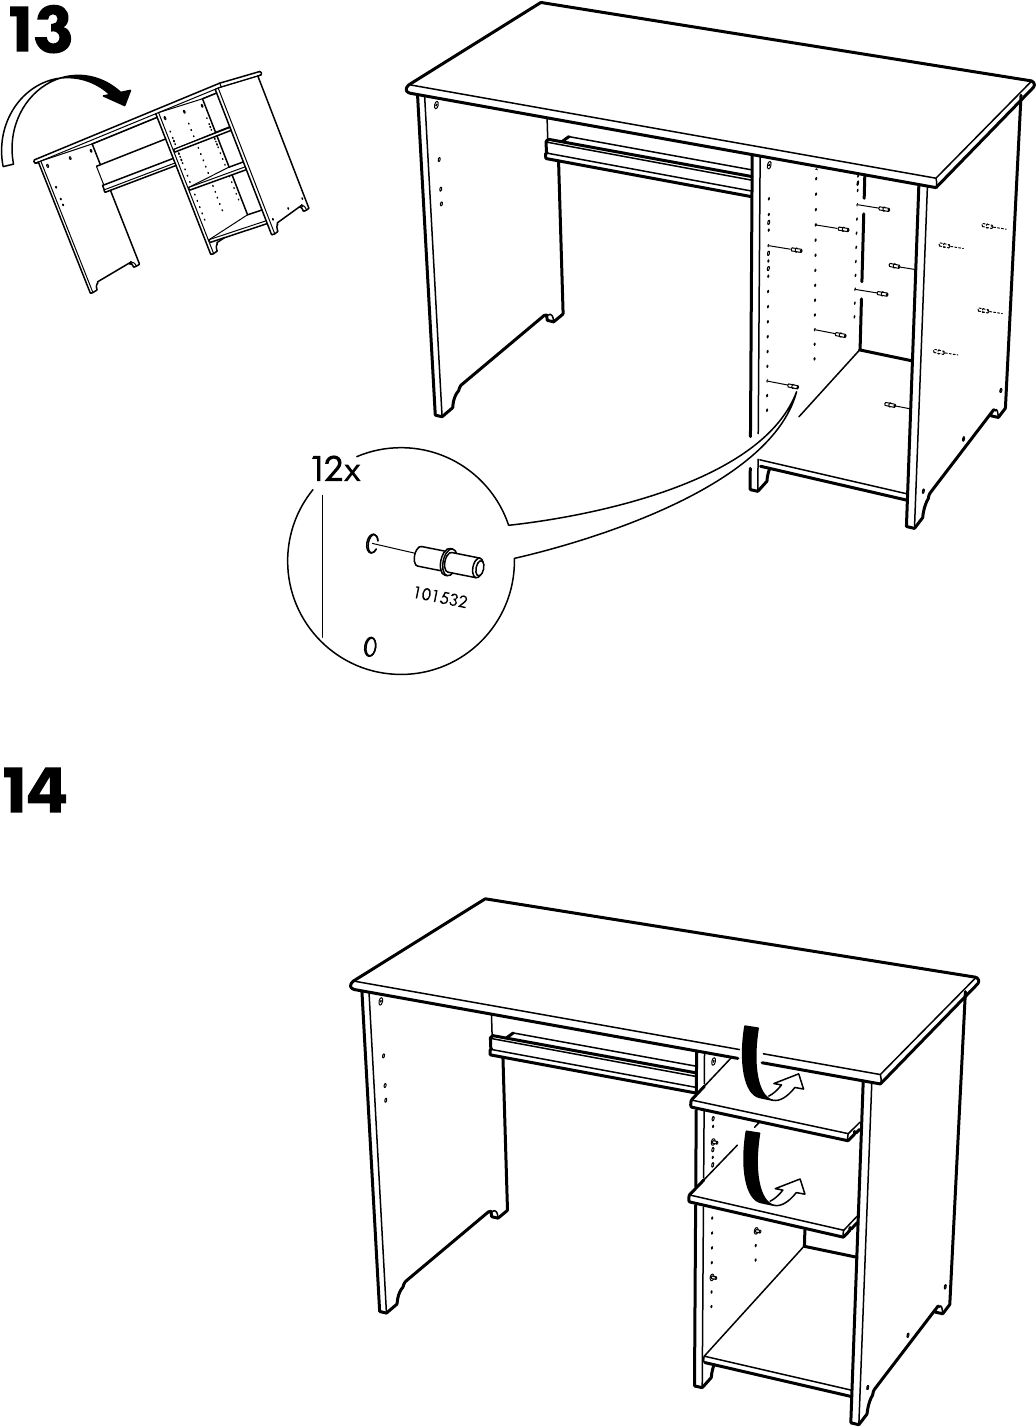 Bedienungsanleitung Ikea Vallvik Bureau Seite 11 Von 12 Danisch